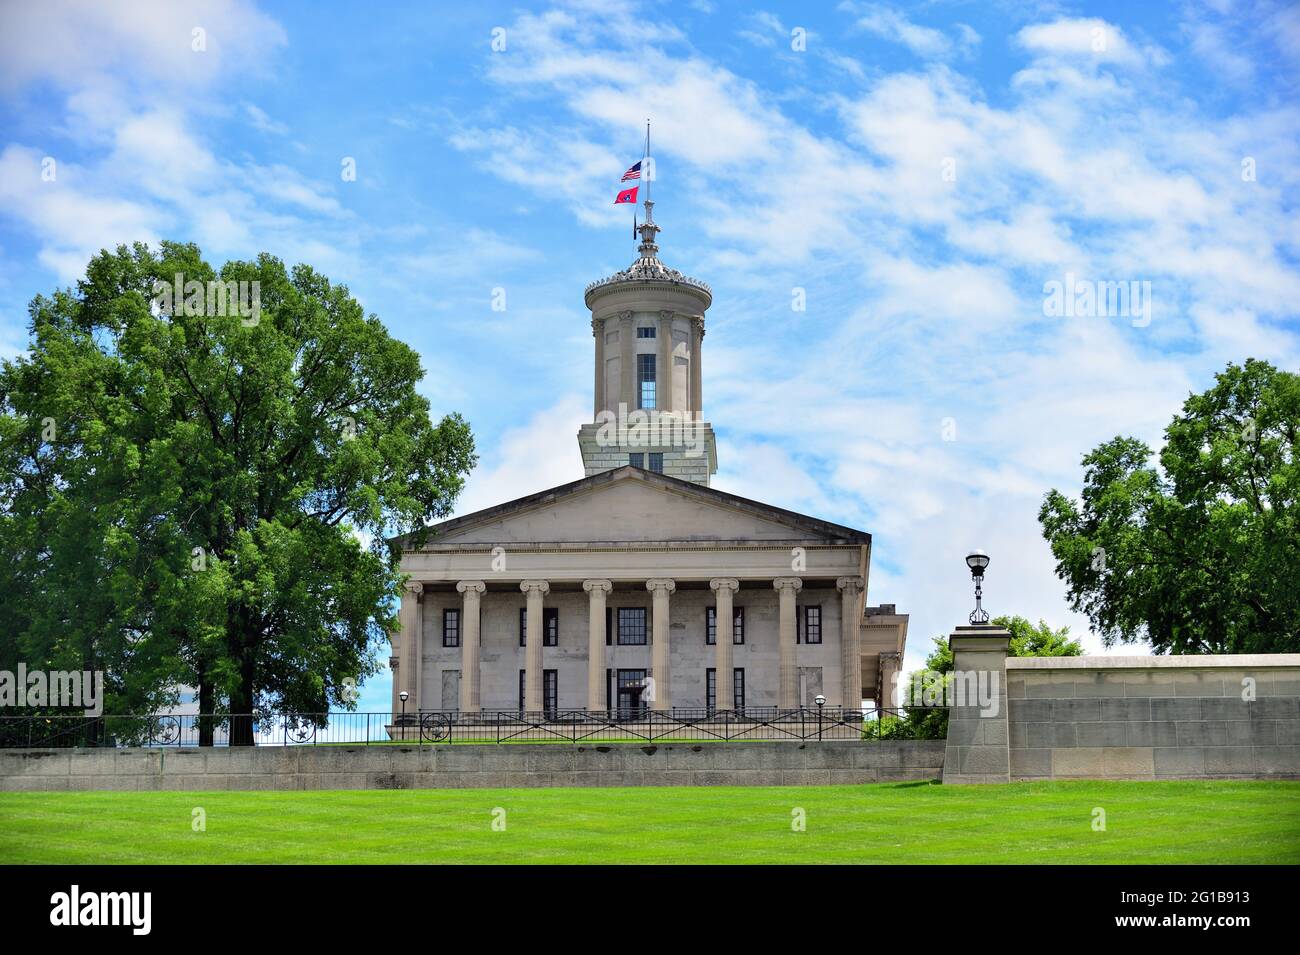 Nashville, Tennessee, USA. Das Tennessee State Capitol Building wurde zwischen 1845 und 1859 erbaut und im neoklassizistischem Stil erbaut. Stockfoto